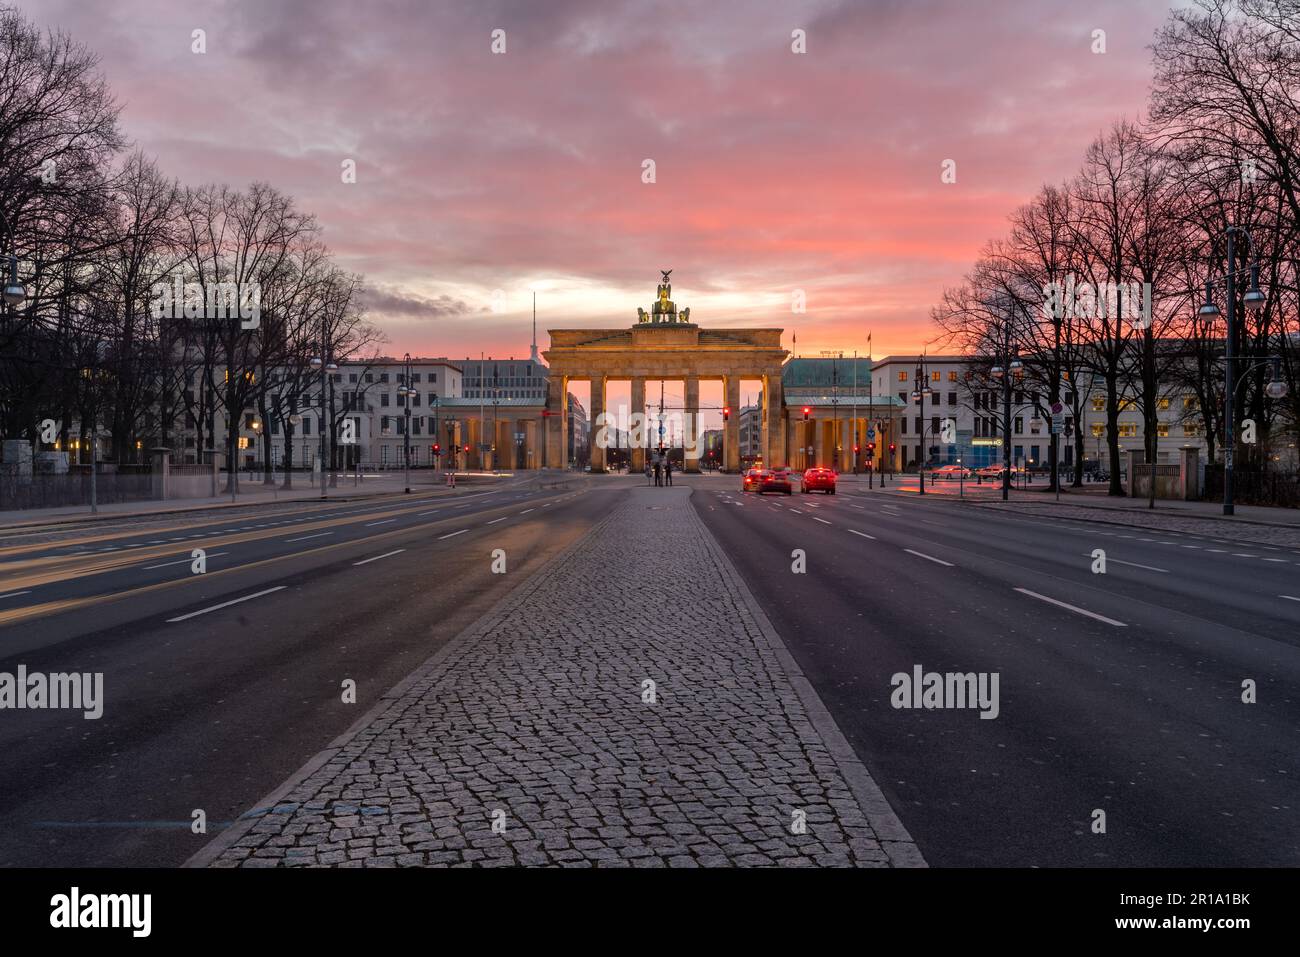 Das Brandenburger Tor ist ein aus dem 18. Jahrhundert neoklassischen Denkmal in Berlin, und eine der bekanntesten Sehenswürdigkeiten Deutschlands. Stockfoto